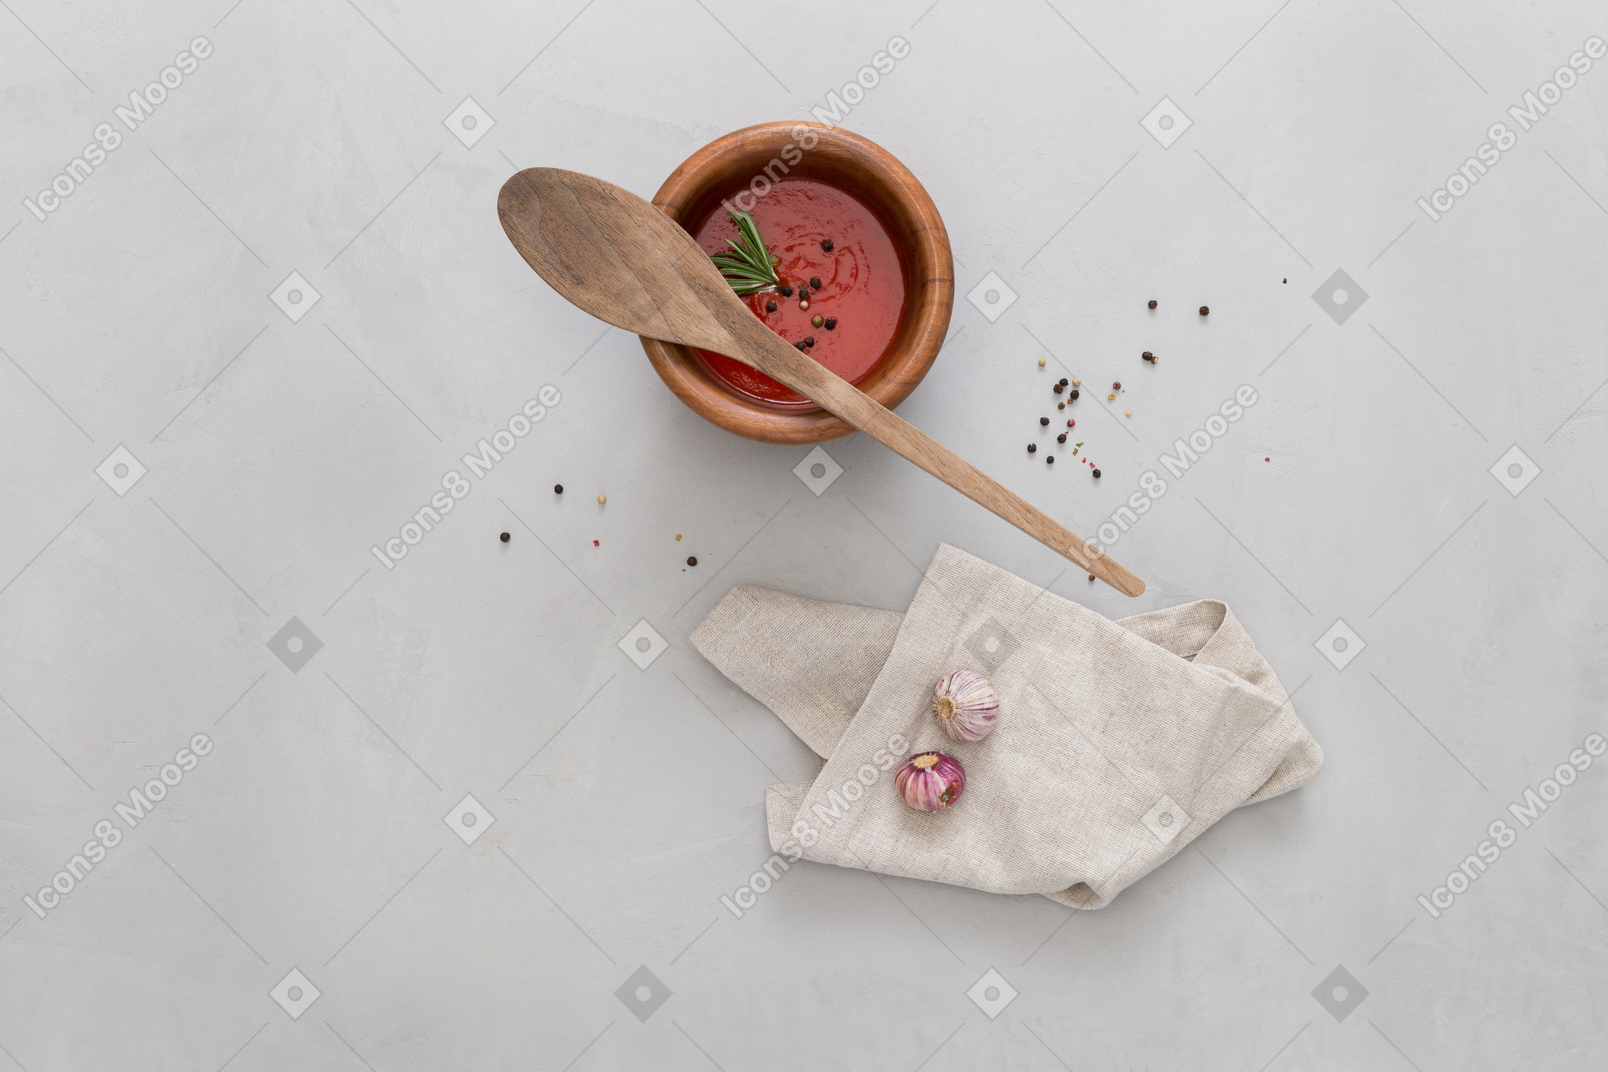 Un bol de gaspacho, de l'ail et une cuillère en bois